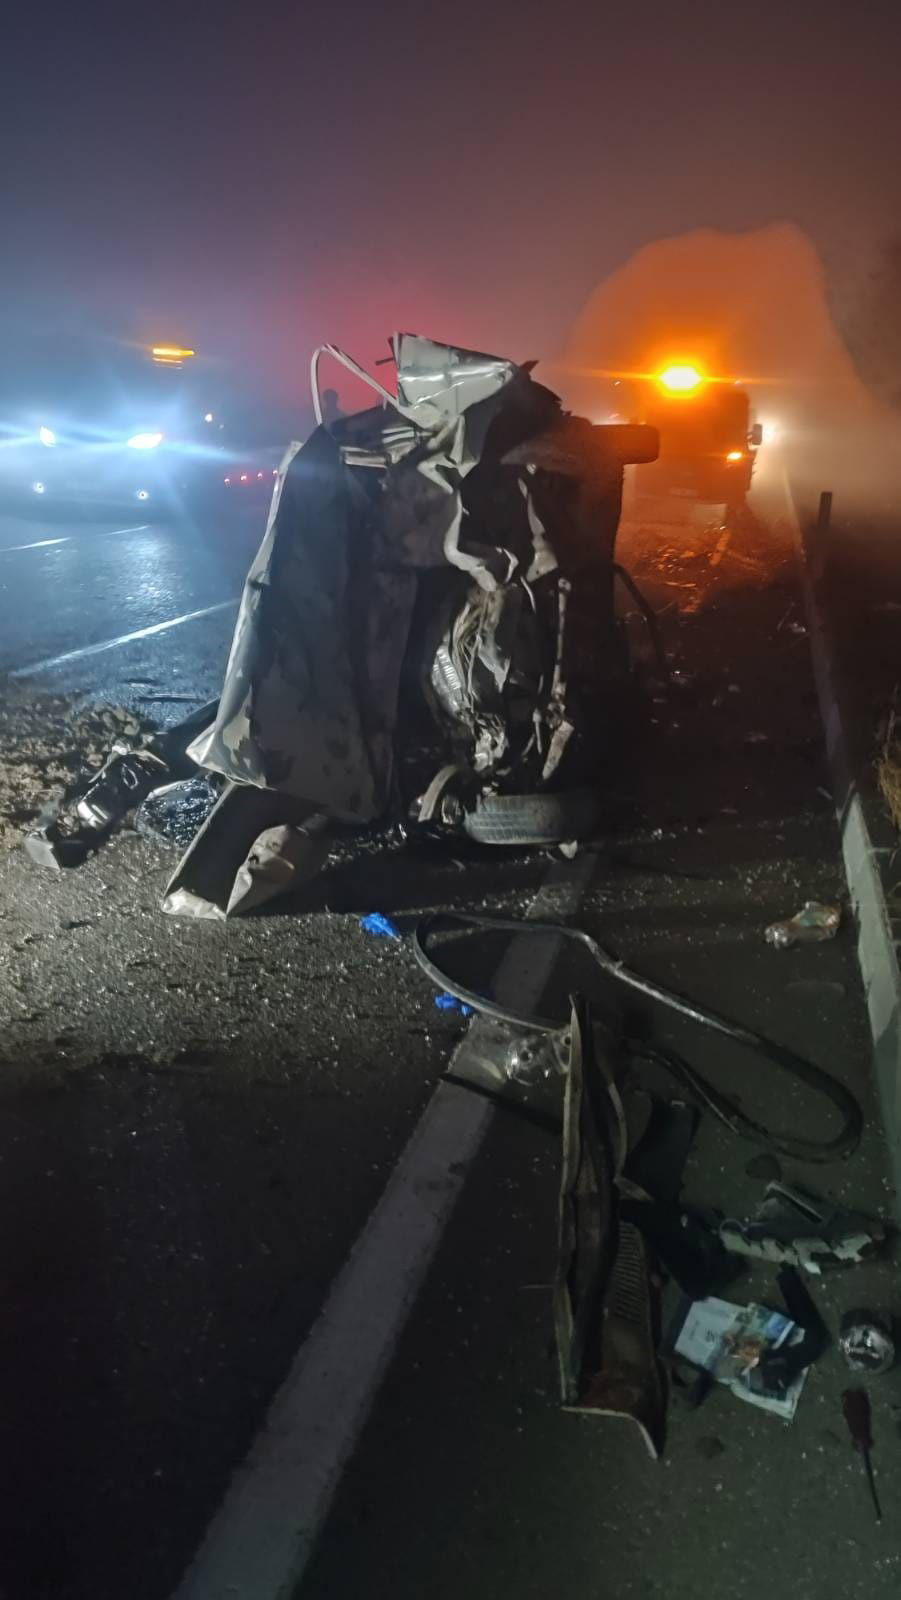 Isparta ilinde meydana gelen trafik kazasında, iki otomobil çarpıştı. Kazada maalesef 2 kişi hayatını kaybederken, 2 kişi de yaralandı.